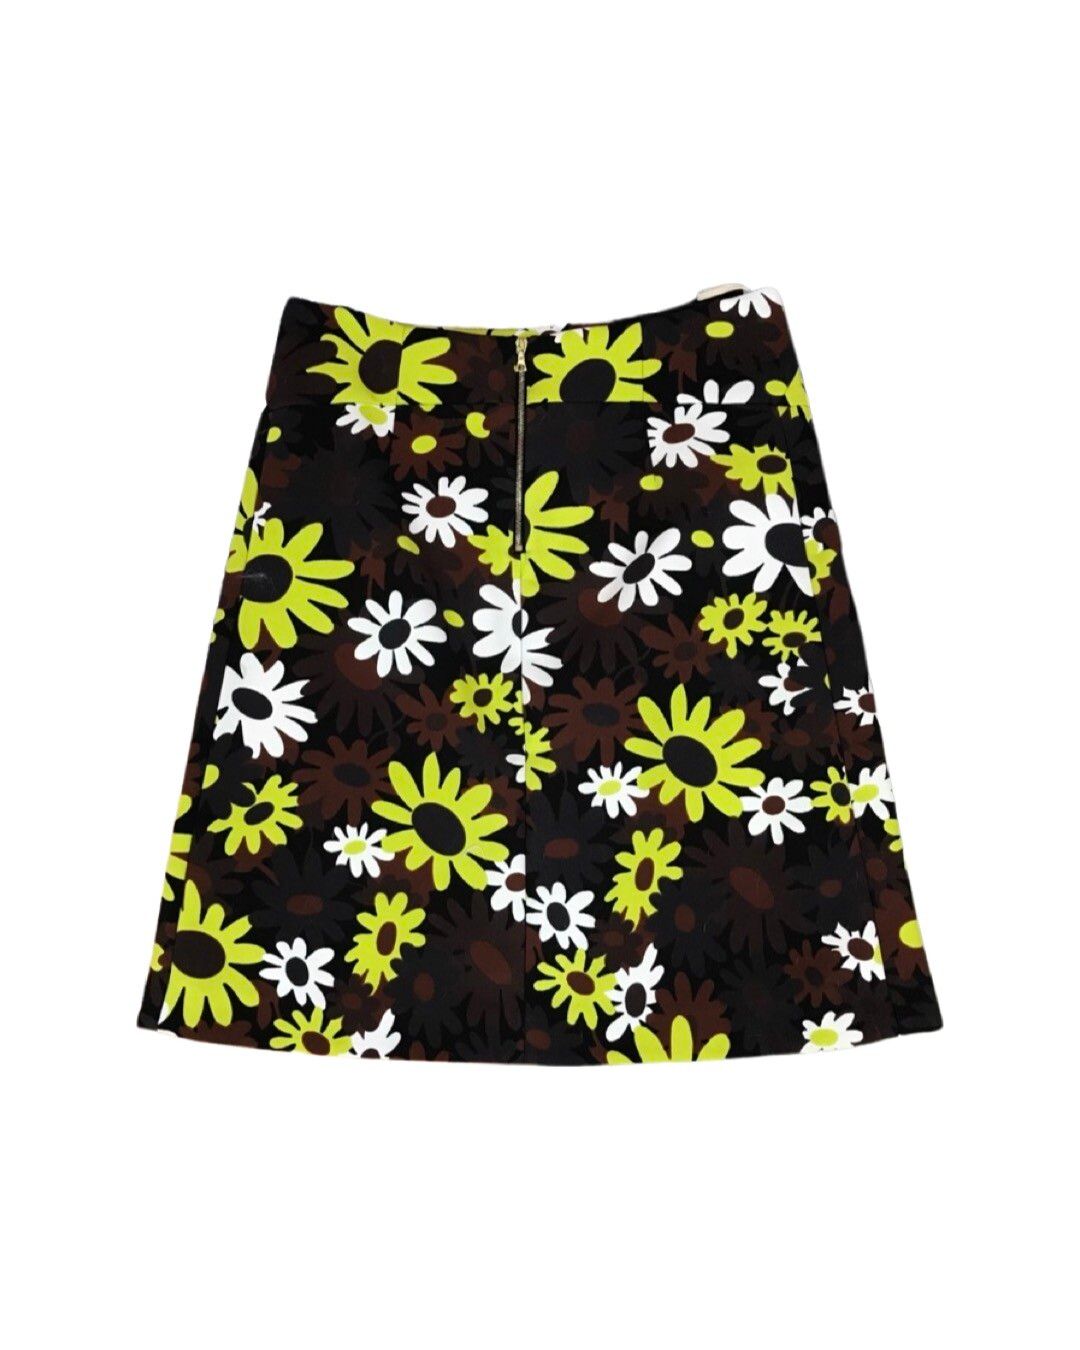 Daisy flower skirt - 2